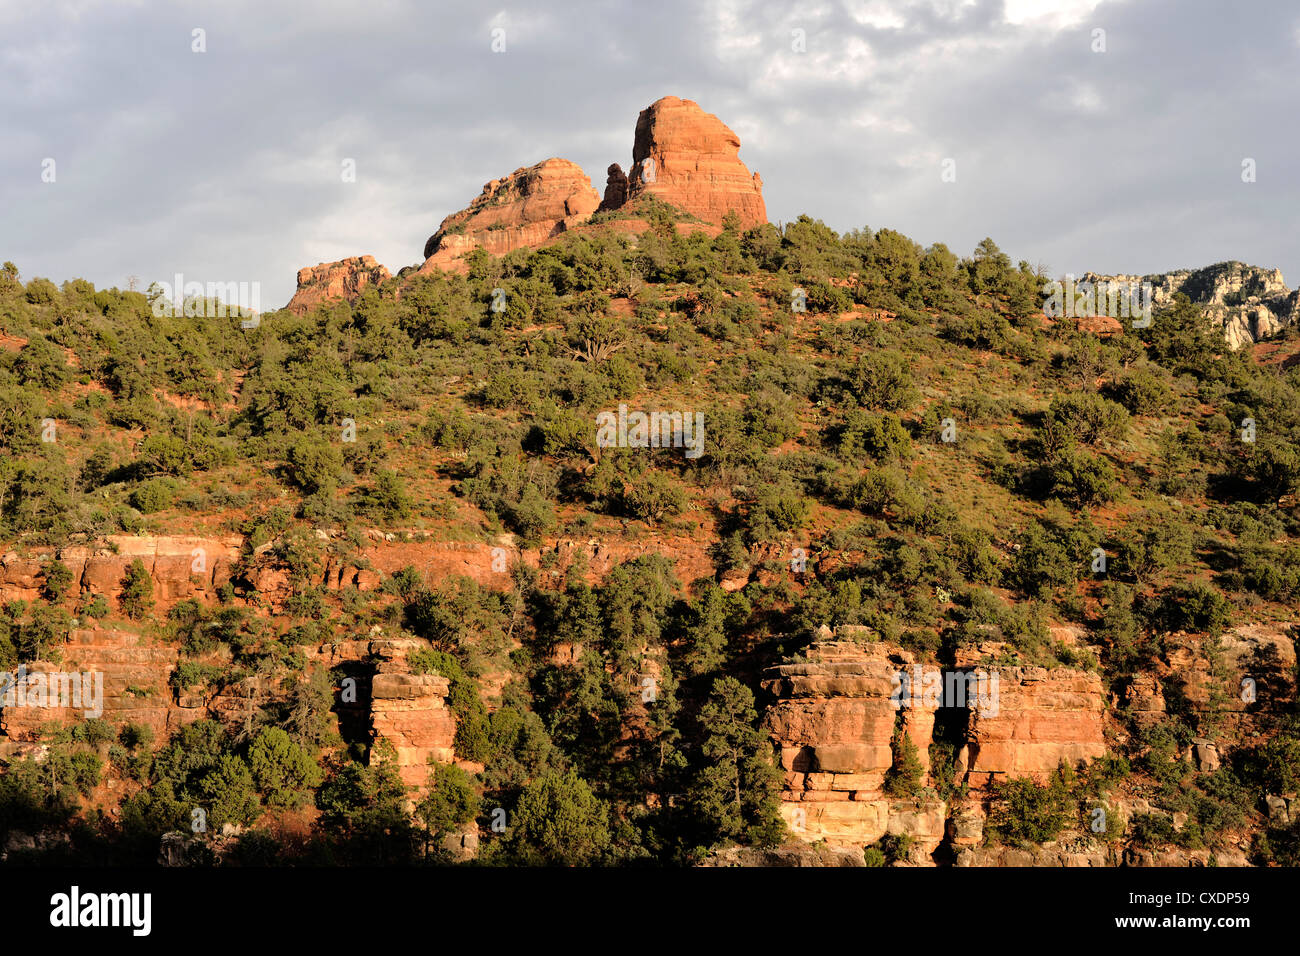 Red rock formations of Sedona, Arizona Stock Photo